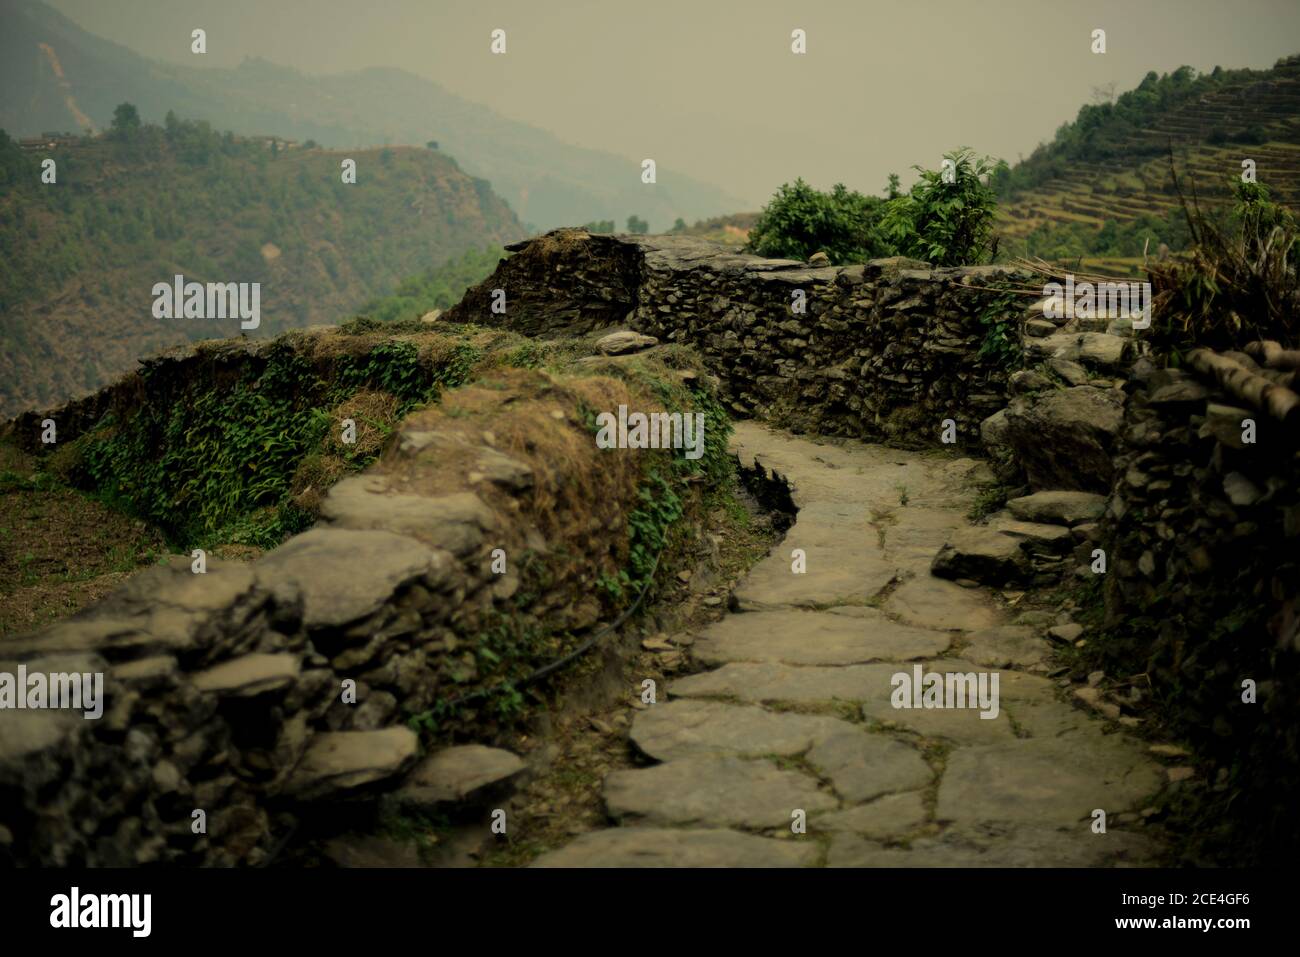 Sentier lapidé dans le village agricole de Sidhane, dans la région montagneuse de Panchase, au Népal, où la communauté gère l'écotourisme. Banque D'Images